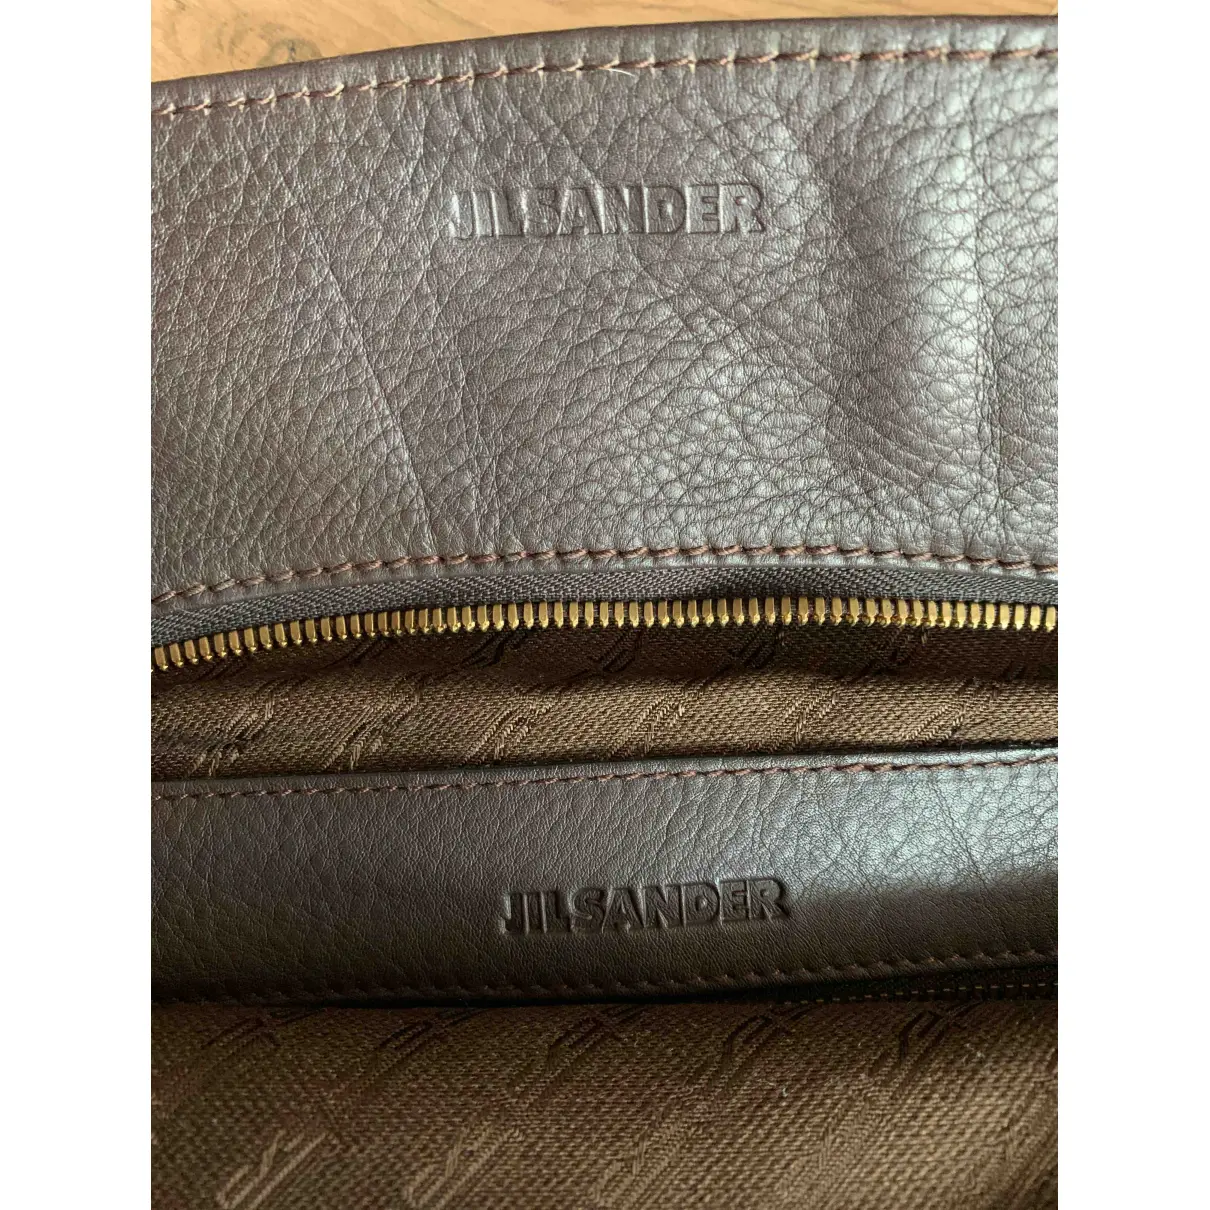 Luxury Jil Sander Handbags Women - Vintage